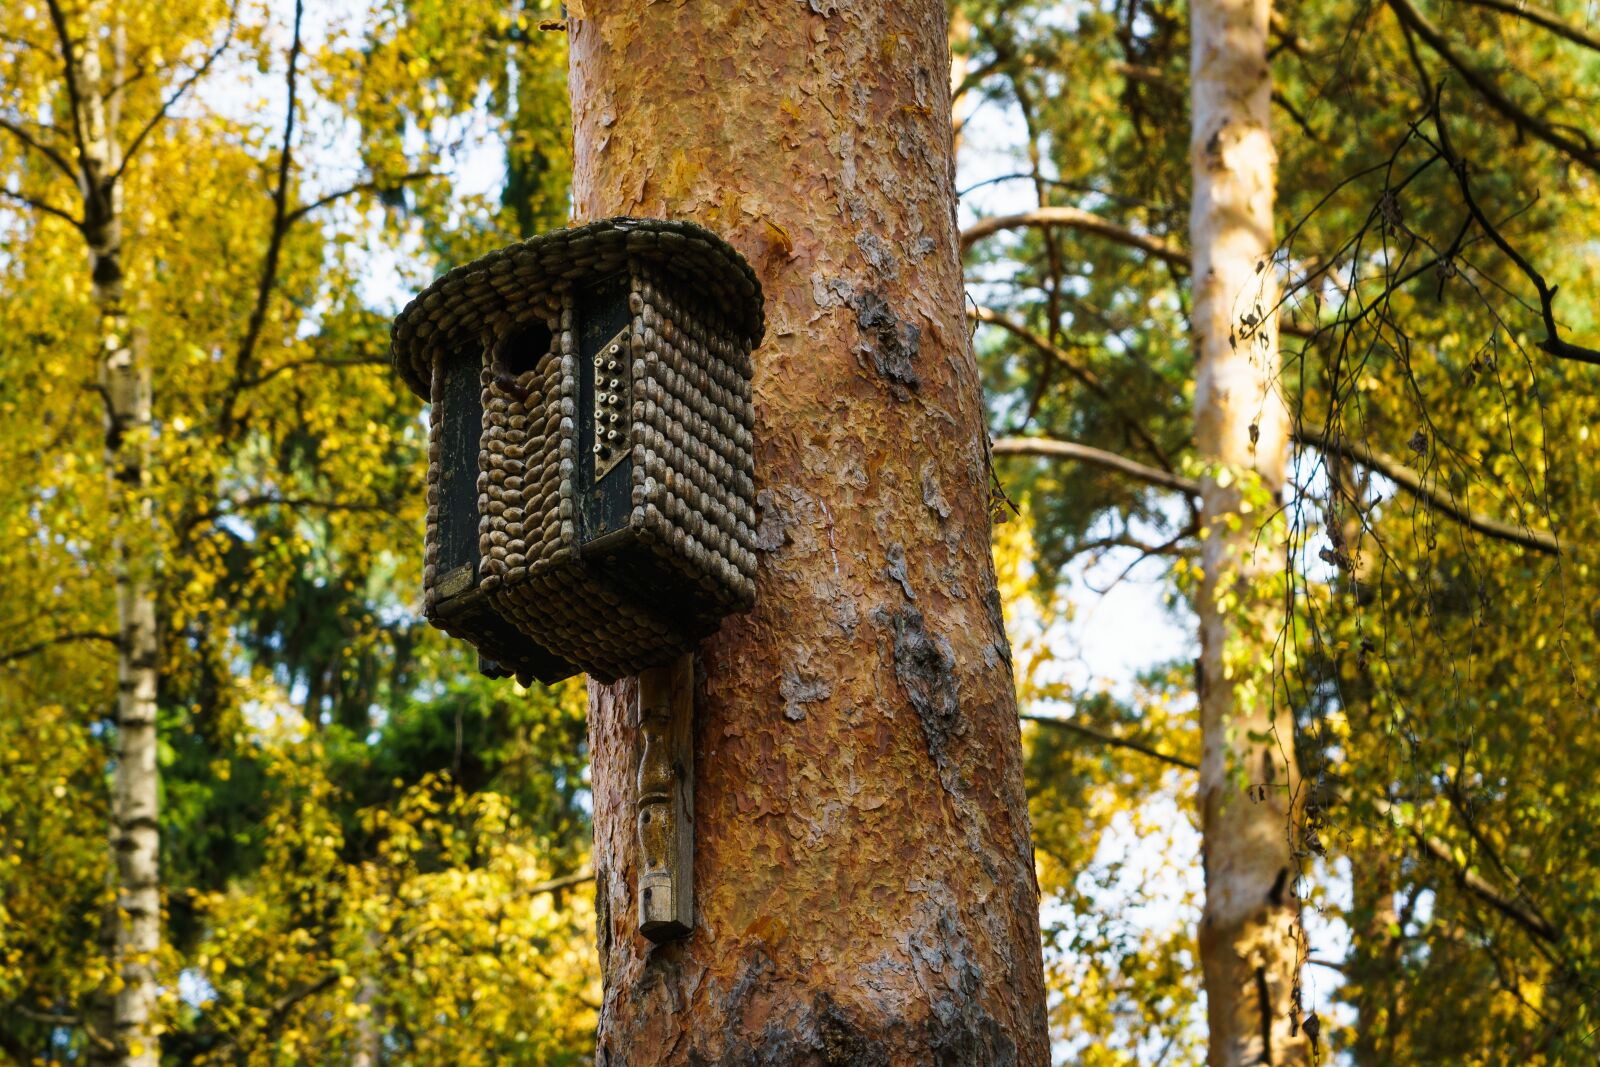 Sony Vario Tessar T* FE 24-70mm F4 ZA OSS sample photo. Birdhouse, tree, autumn photography